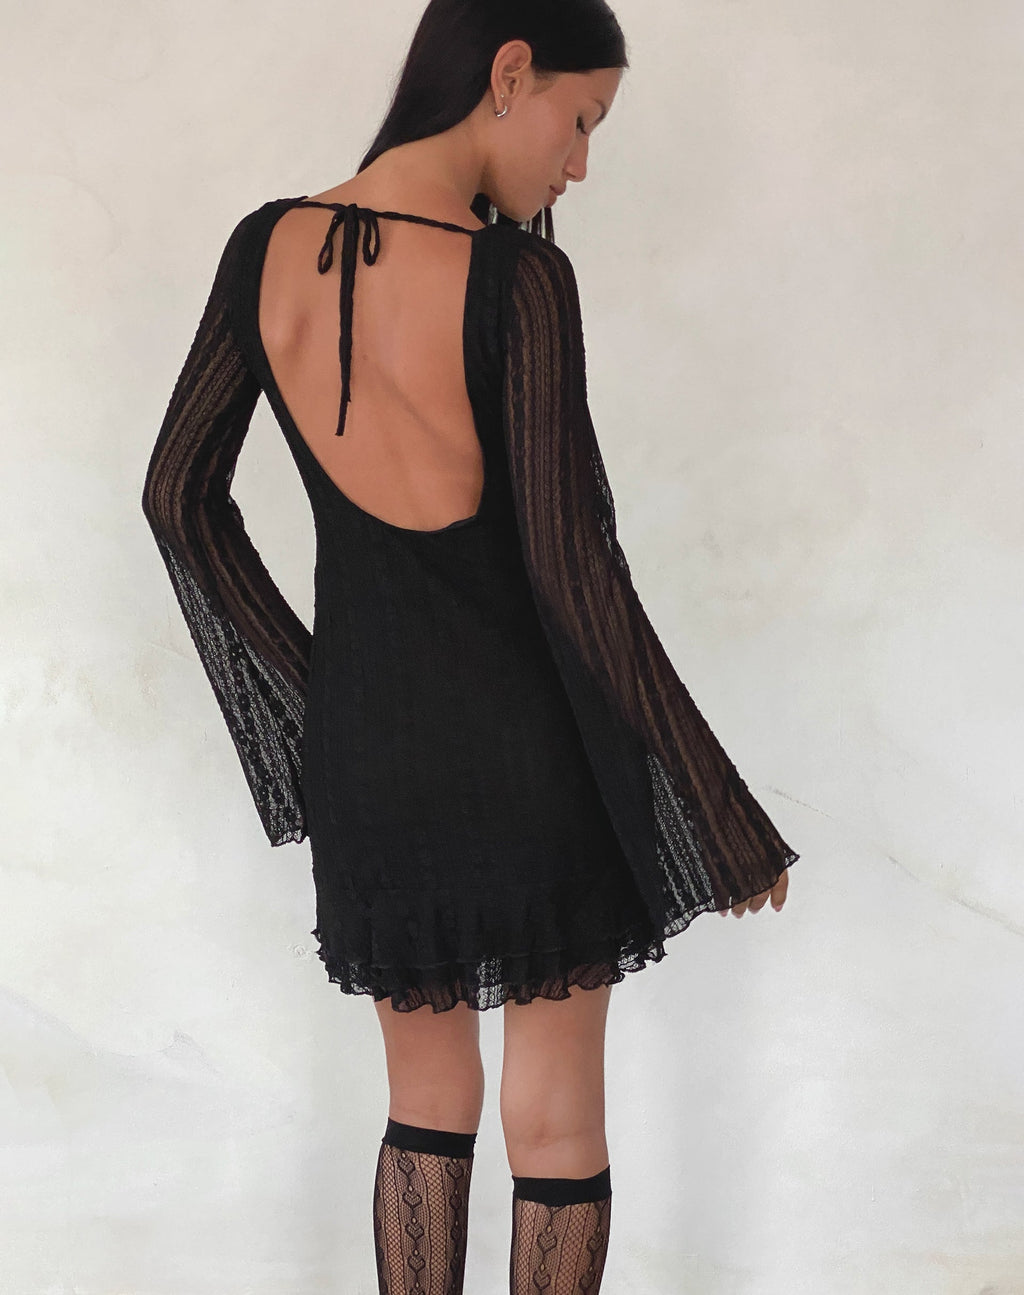 Janawa Backless Mini Dress in Lace Black